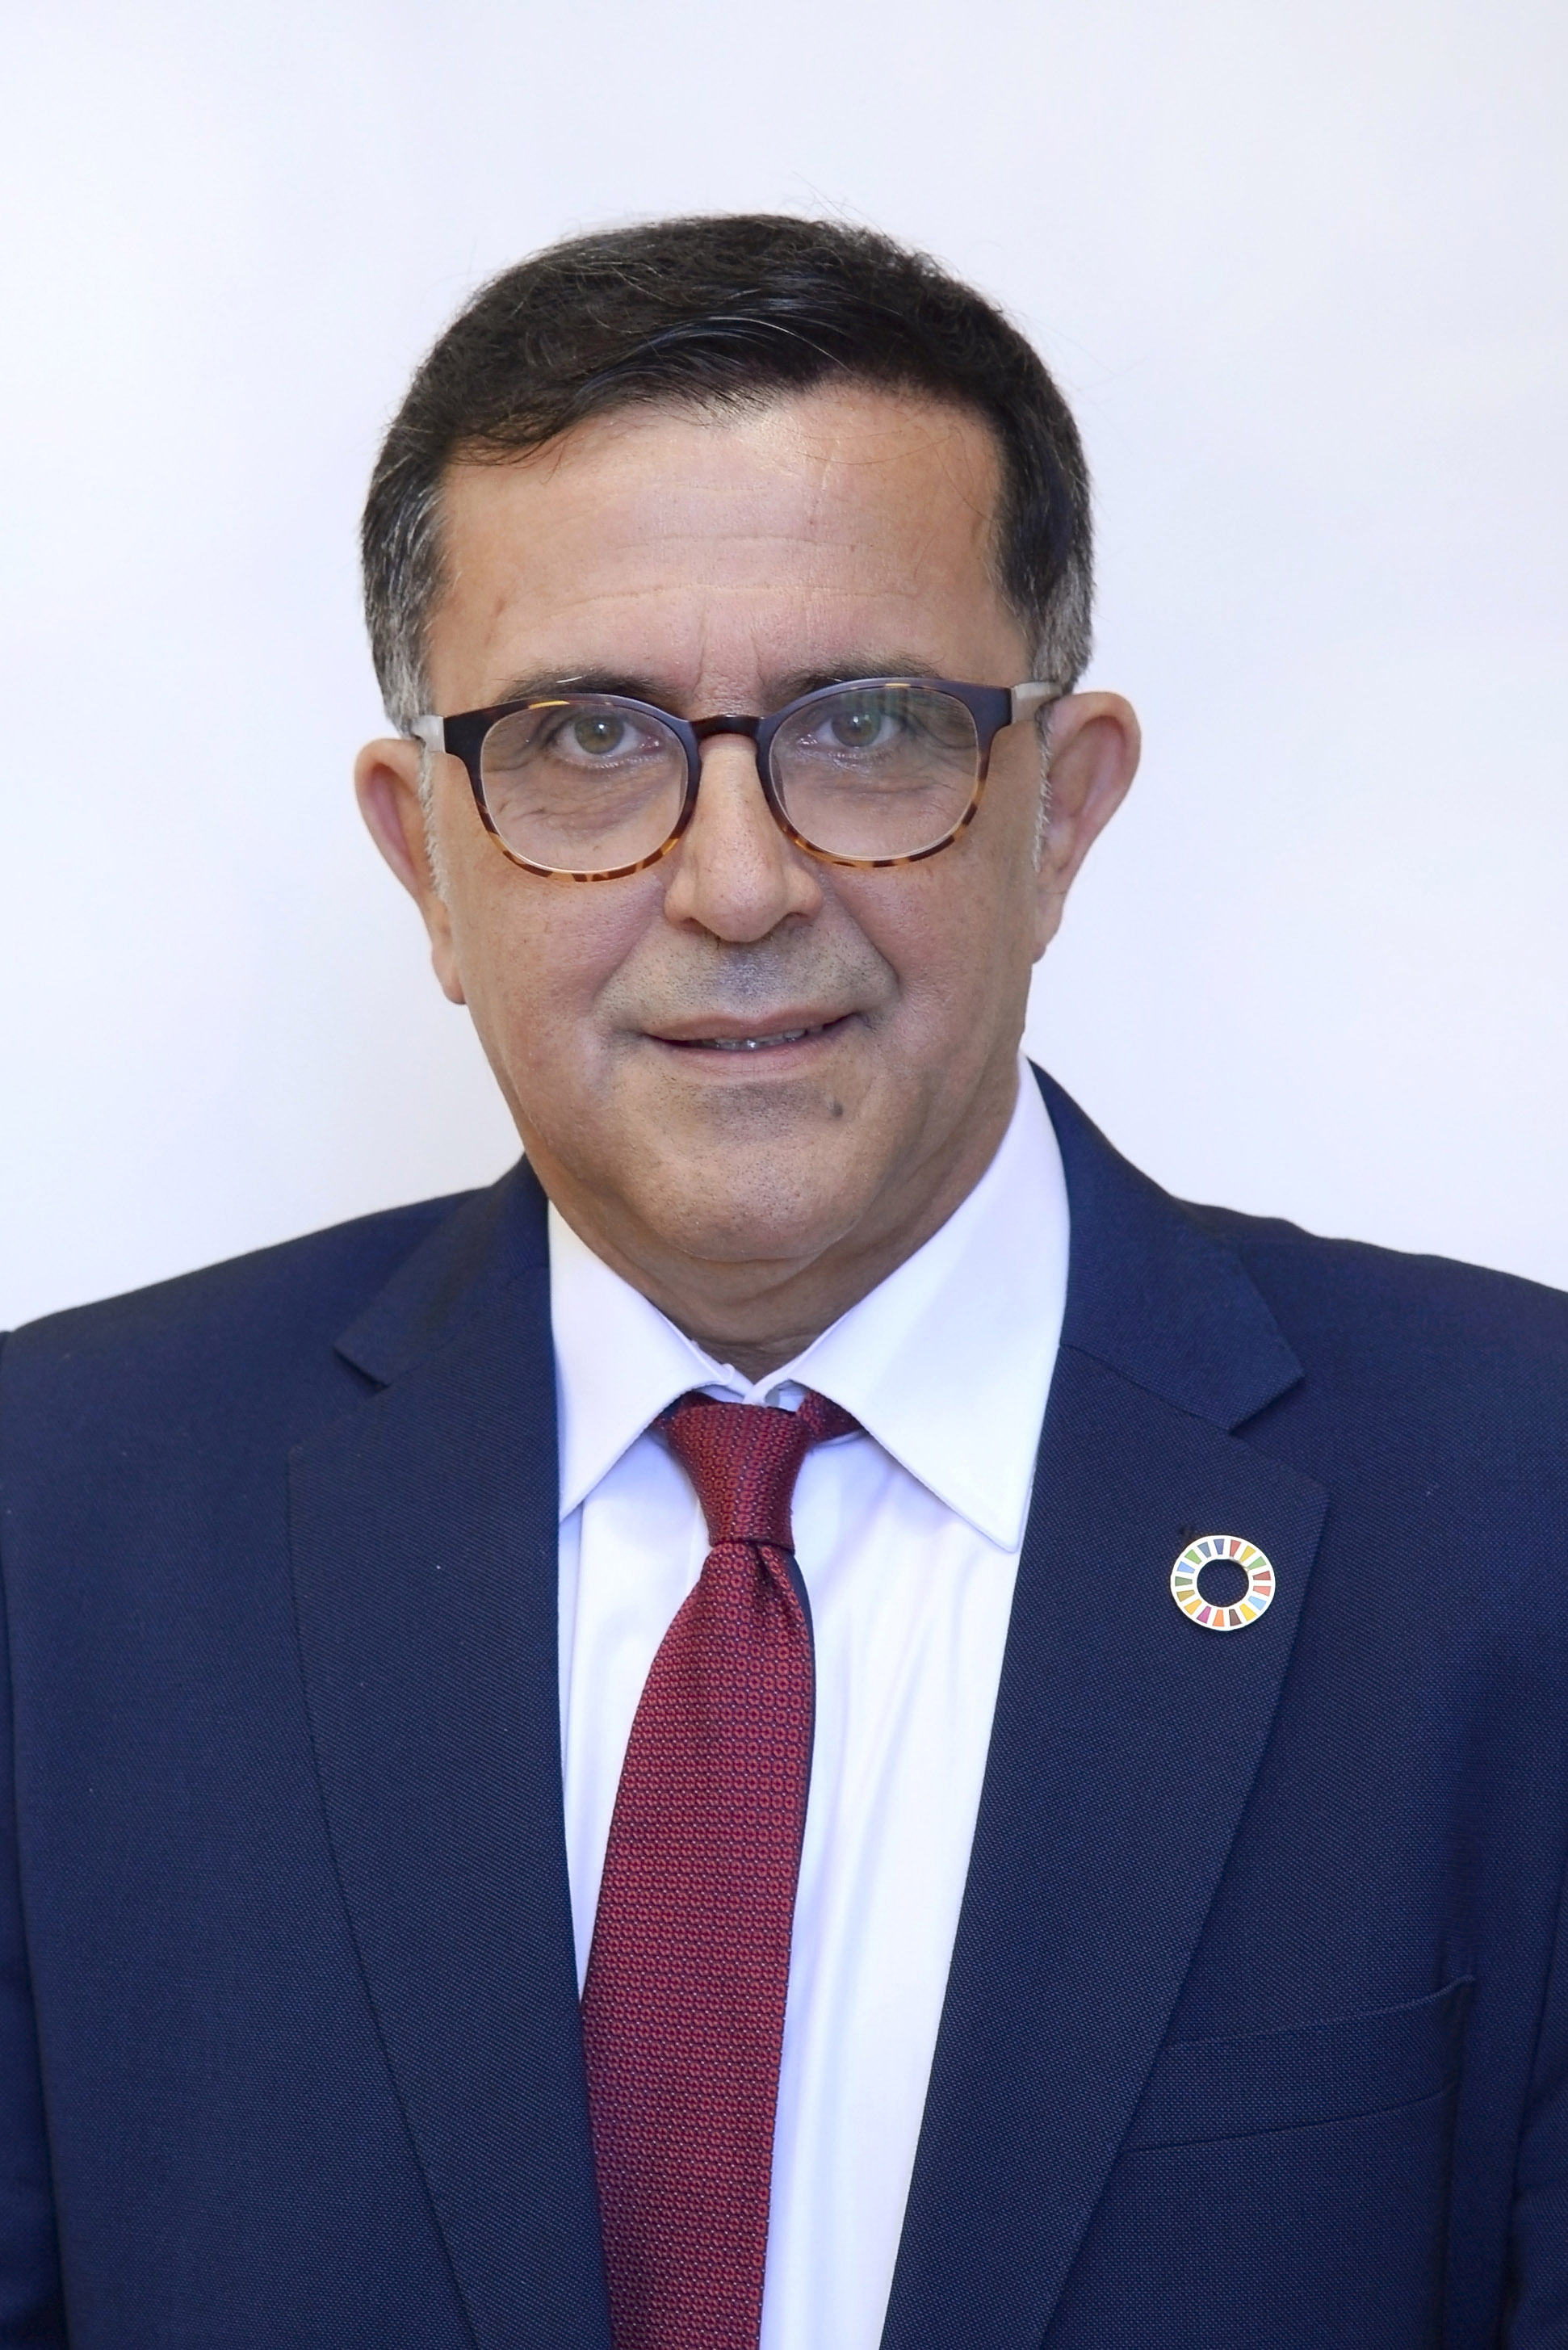 D. José Antonio Serrano Martínez